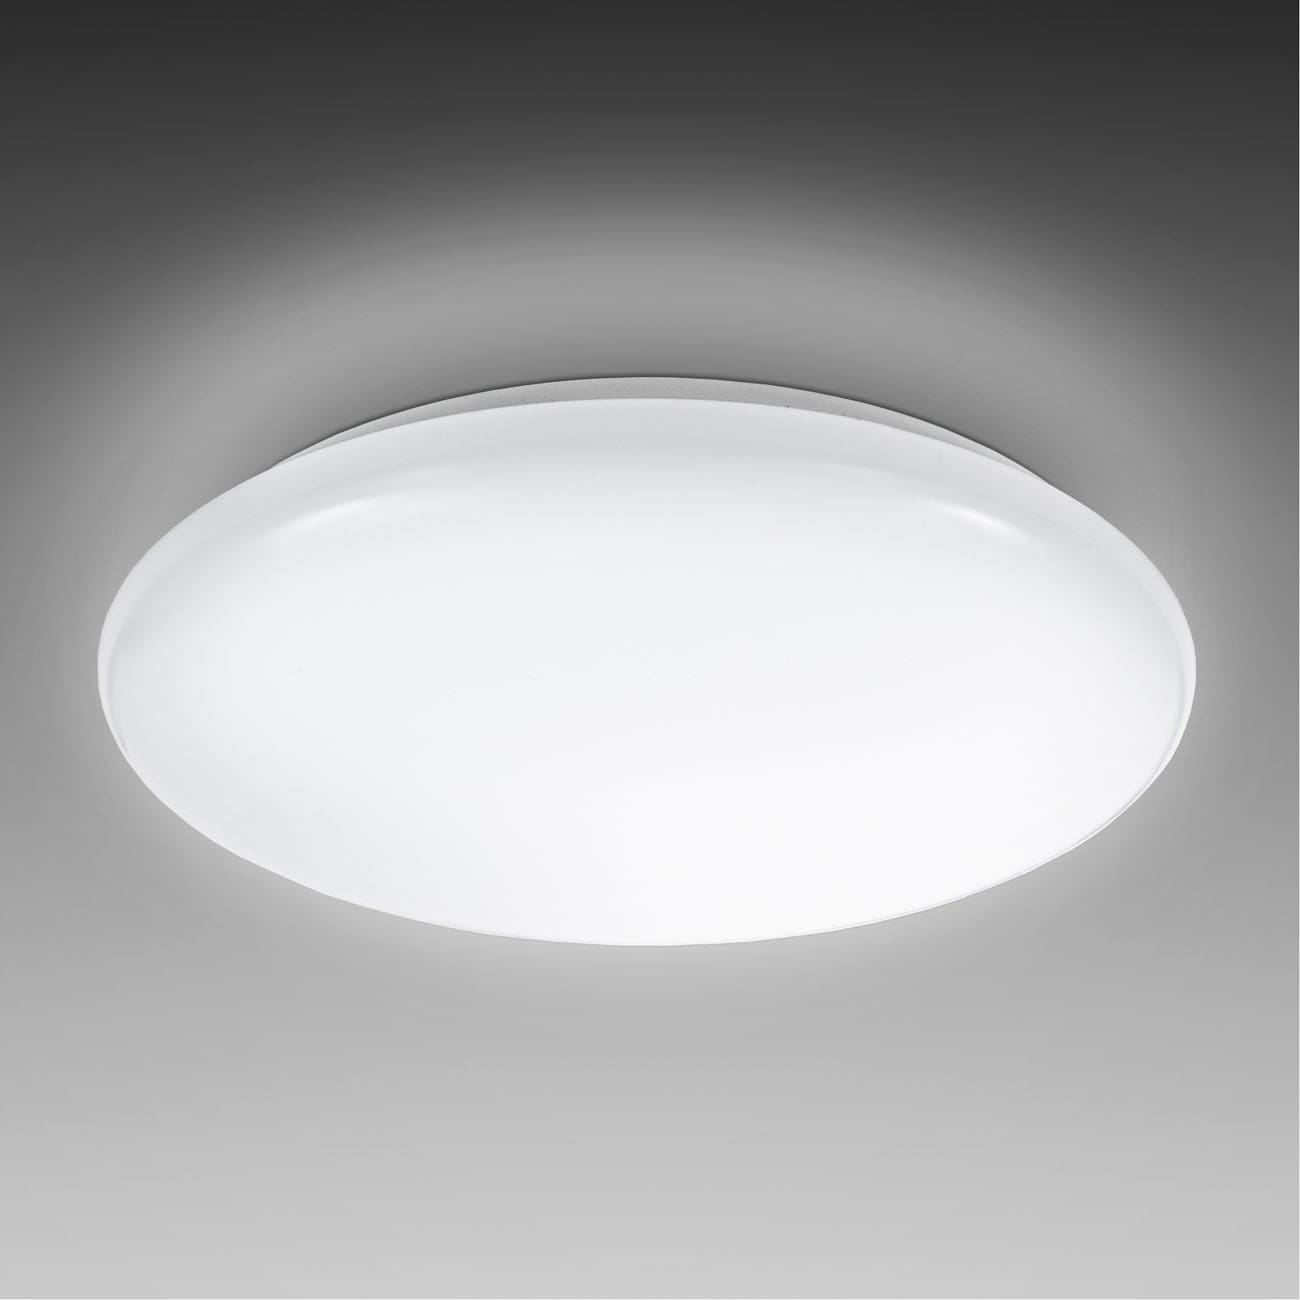 LED Deckenlampe 27,8cm - 1-flammig - Deckenleuchte flach 65mm Beleuchtung Flur Küche Bad inkl Leuchtmittel 12W 1200lm 4000K neutralweiß   | weiß - 3